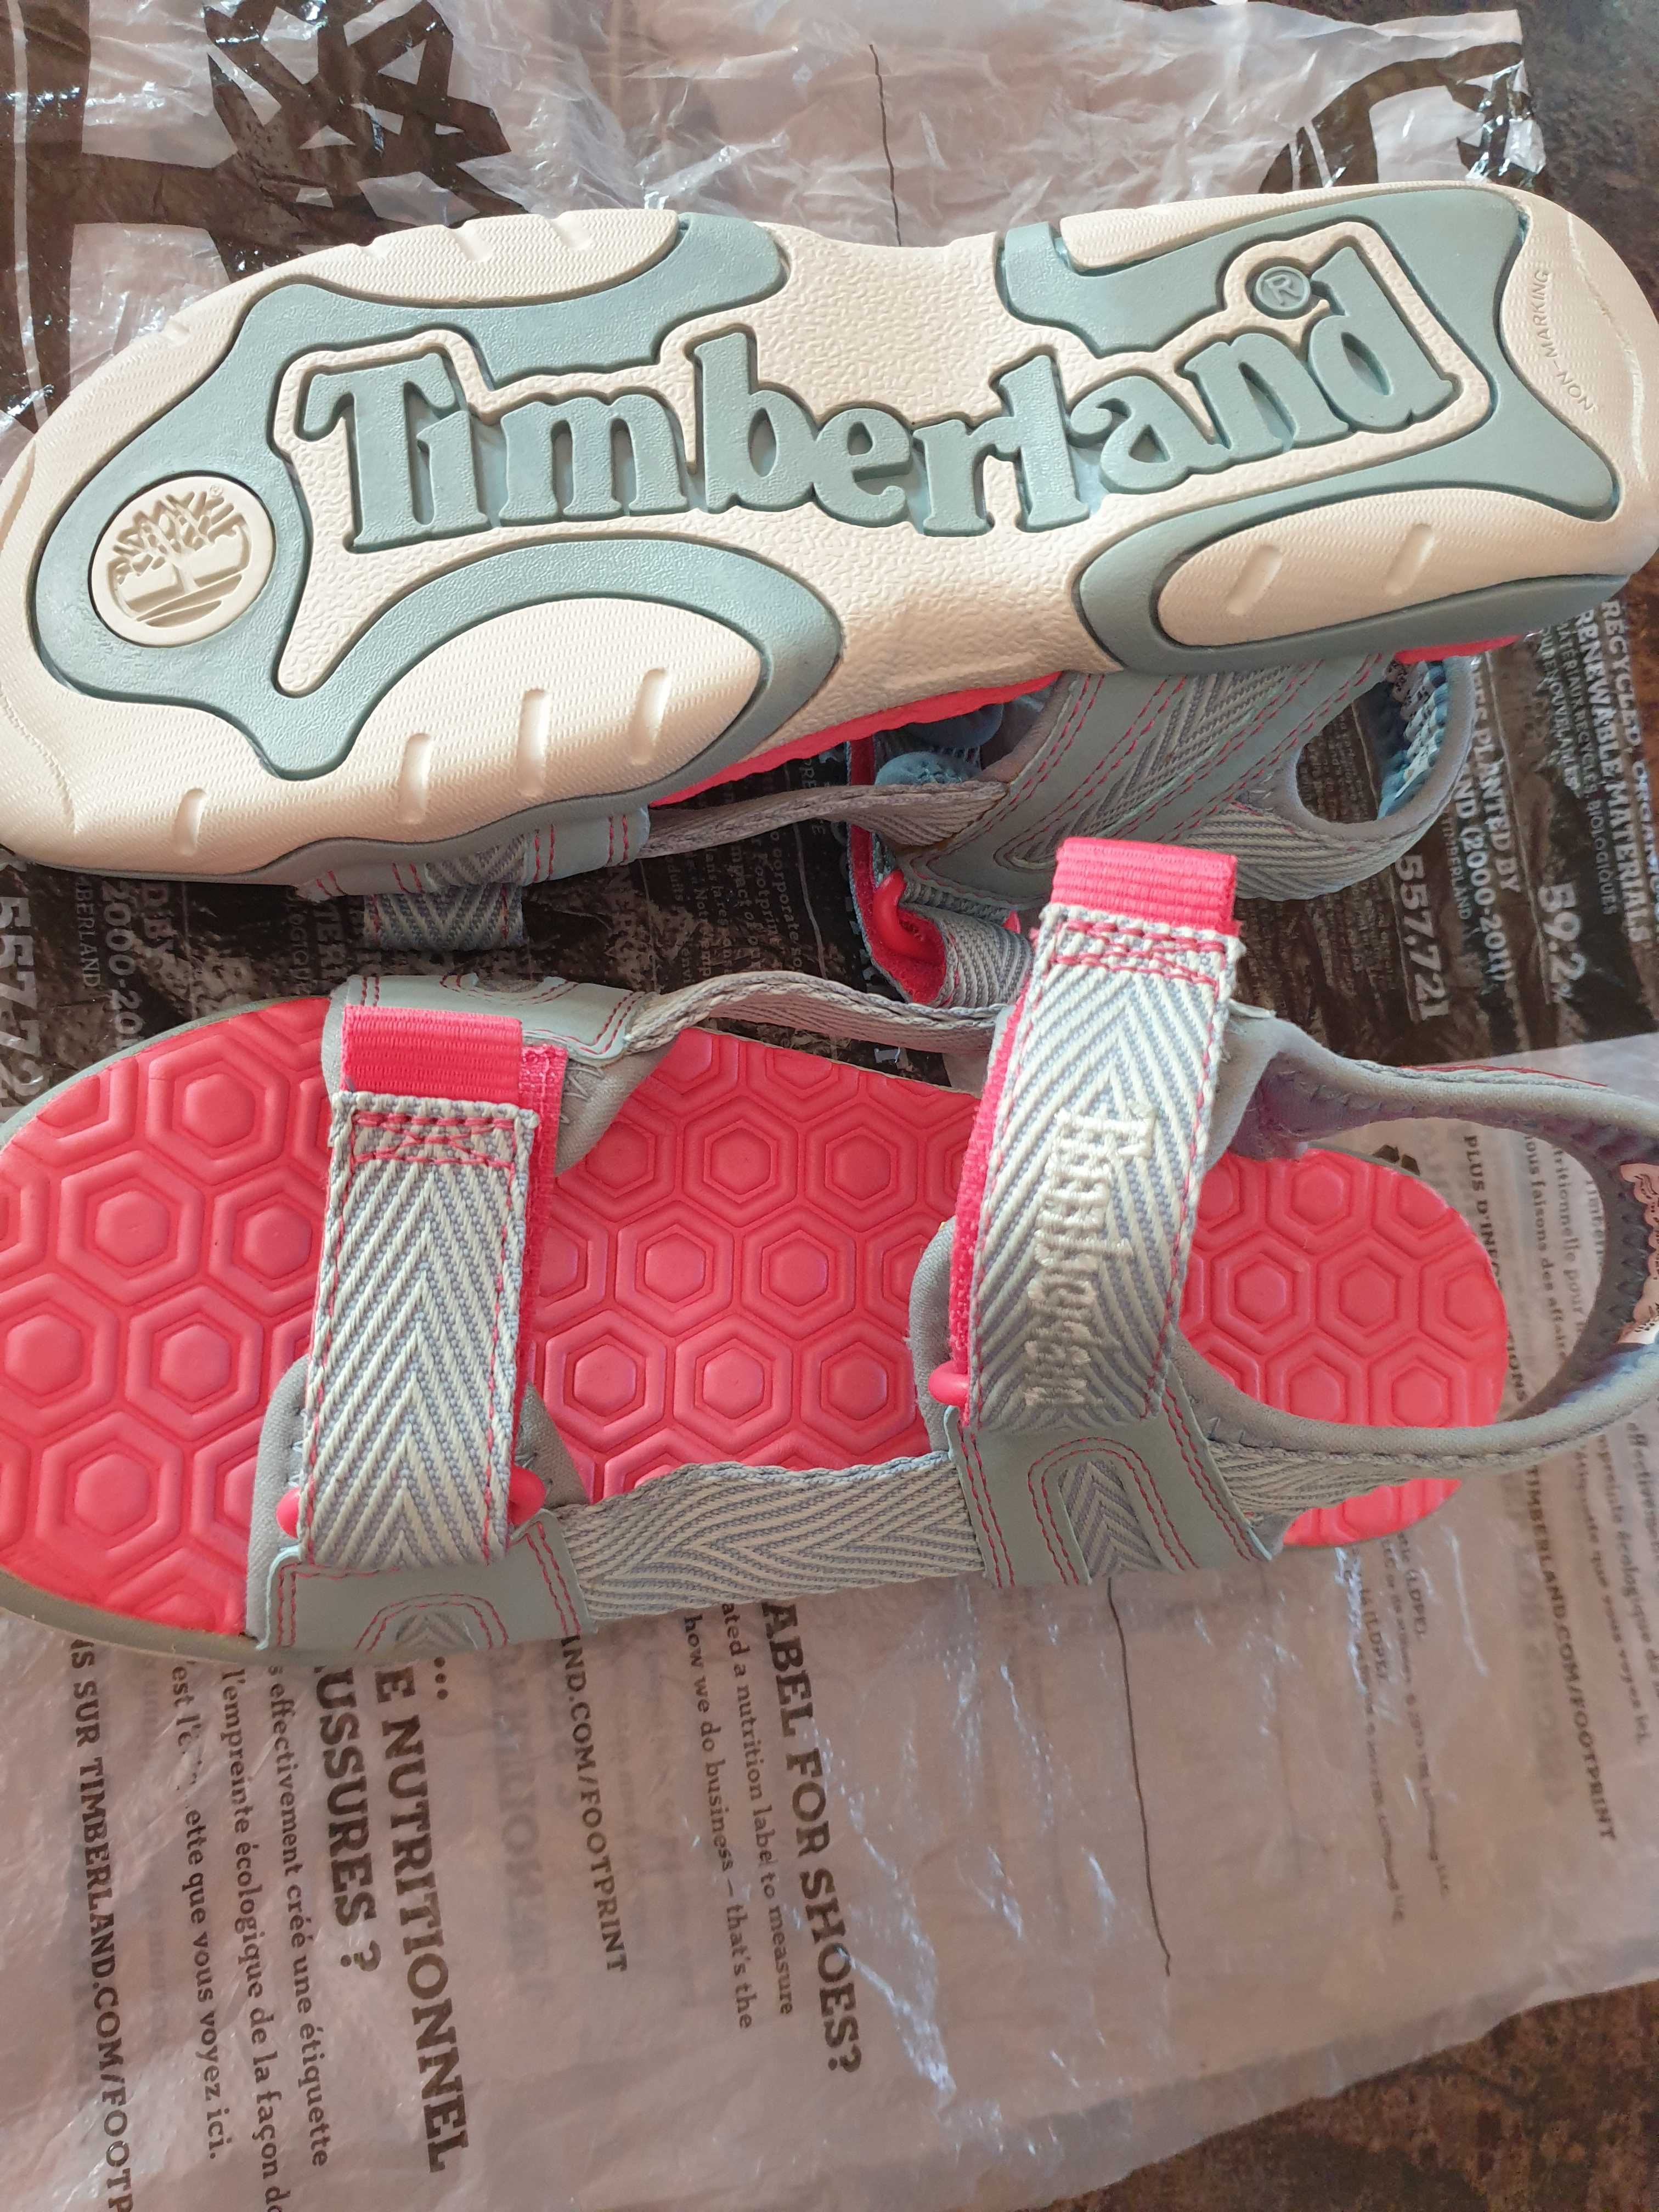 Продам новые сандалии Timberland размер 36. Цена 12000тг.